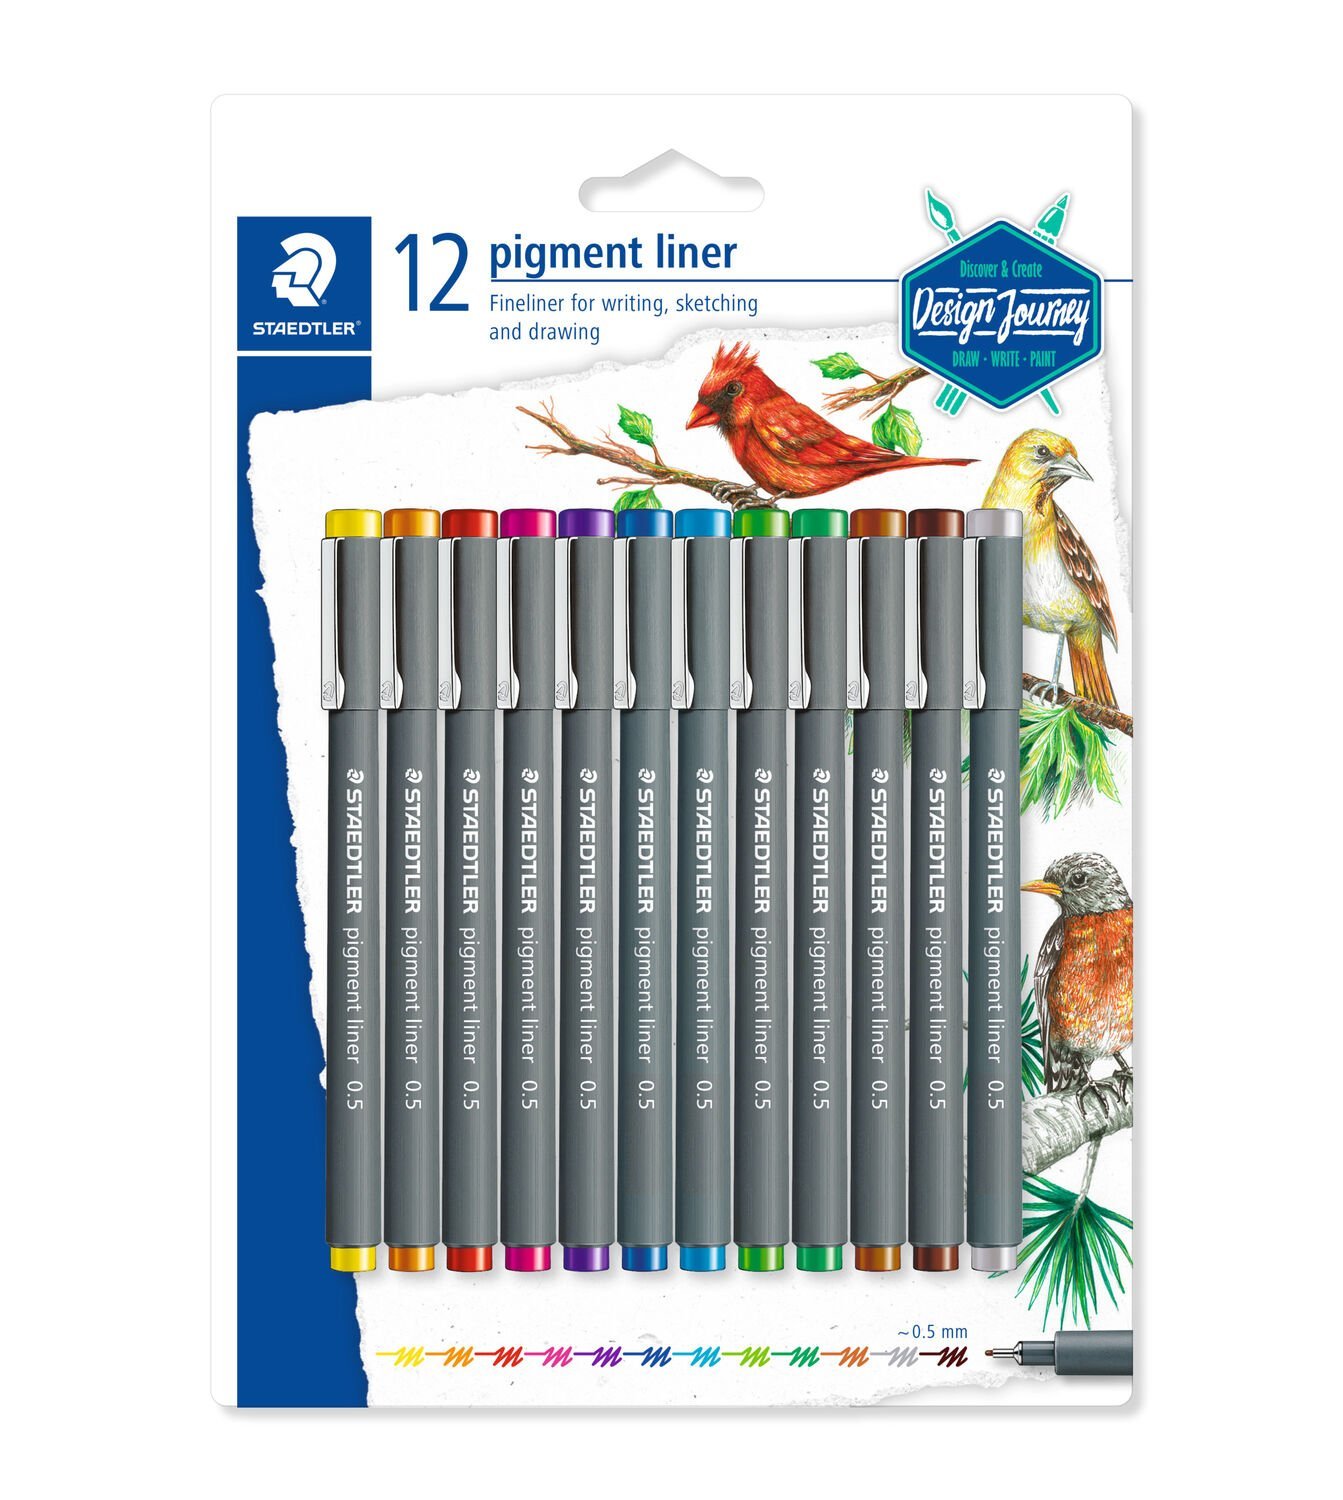 Blister contendo 12 pigment liner em cores sortidas (amarelo, laranja, vermelho, fúcsia, violeta, azul, azul claro, verde claro, verde, marrom claro, marrom, cinza), largura de linha: aproximadamente 0,5 mm